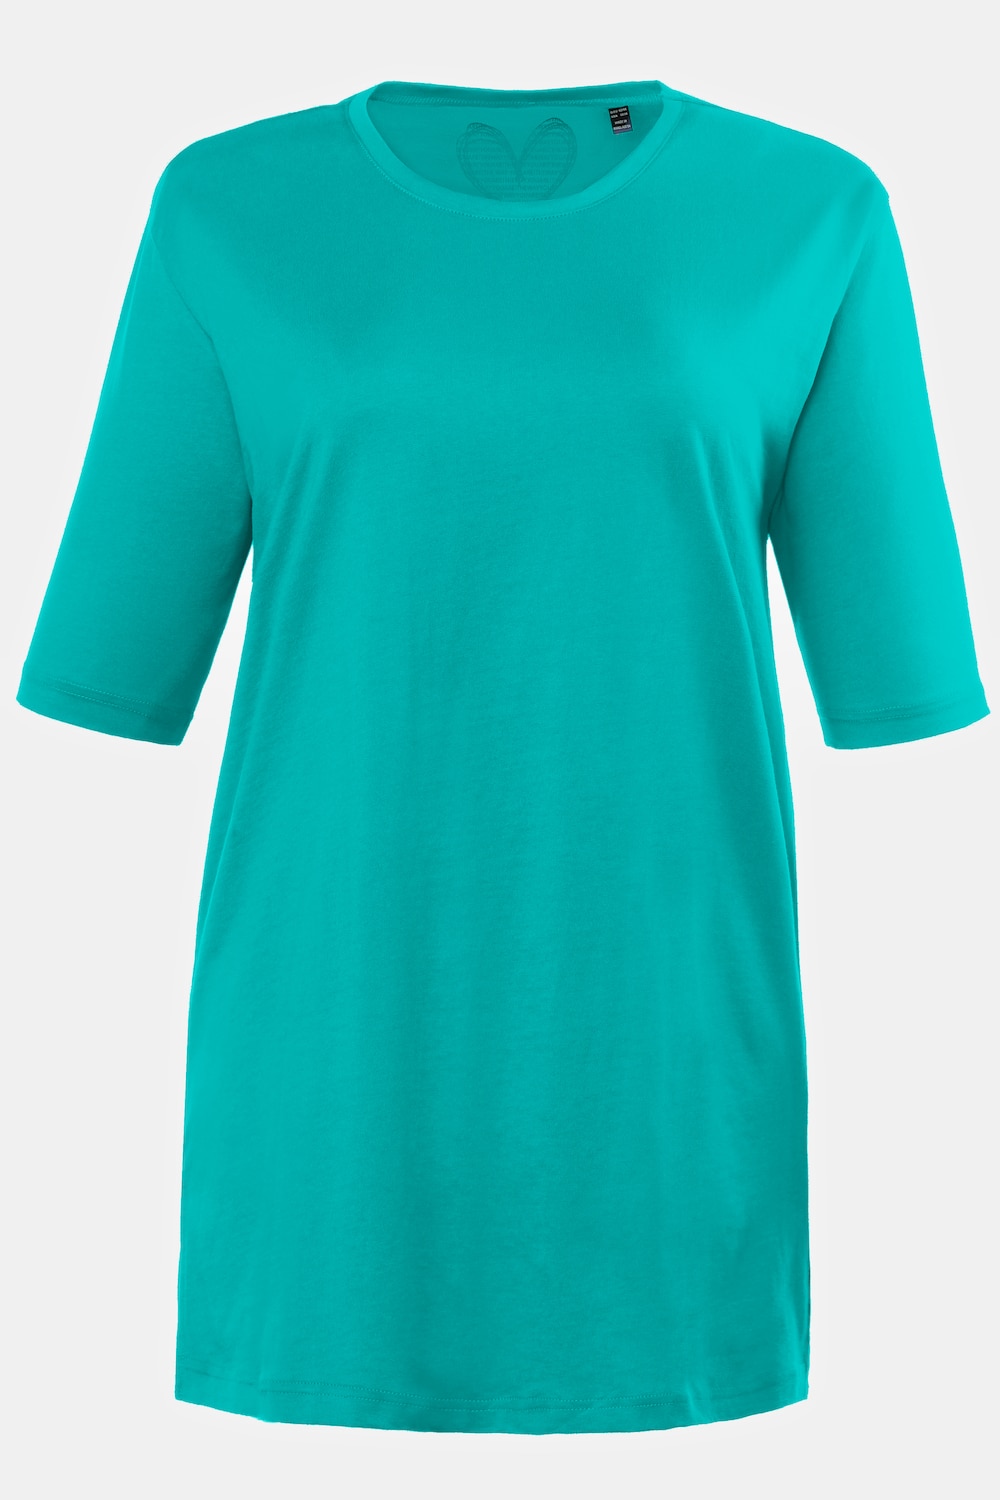 Grote Maten T-shirt, Dames, turquoise, Maat: 62/64, Ulla Popken